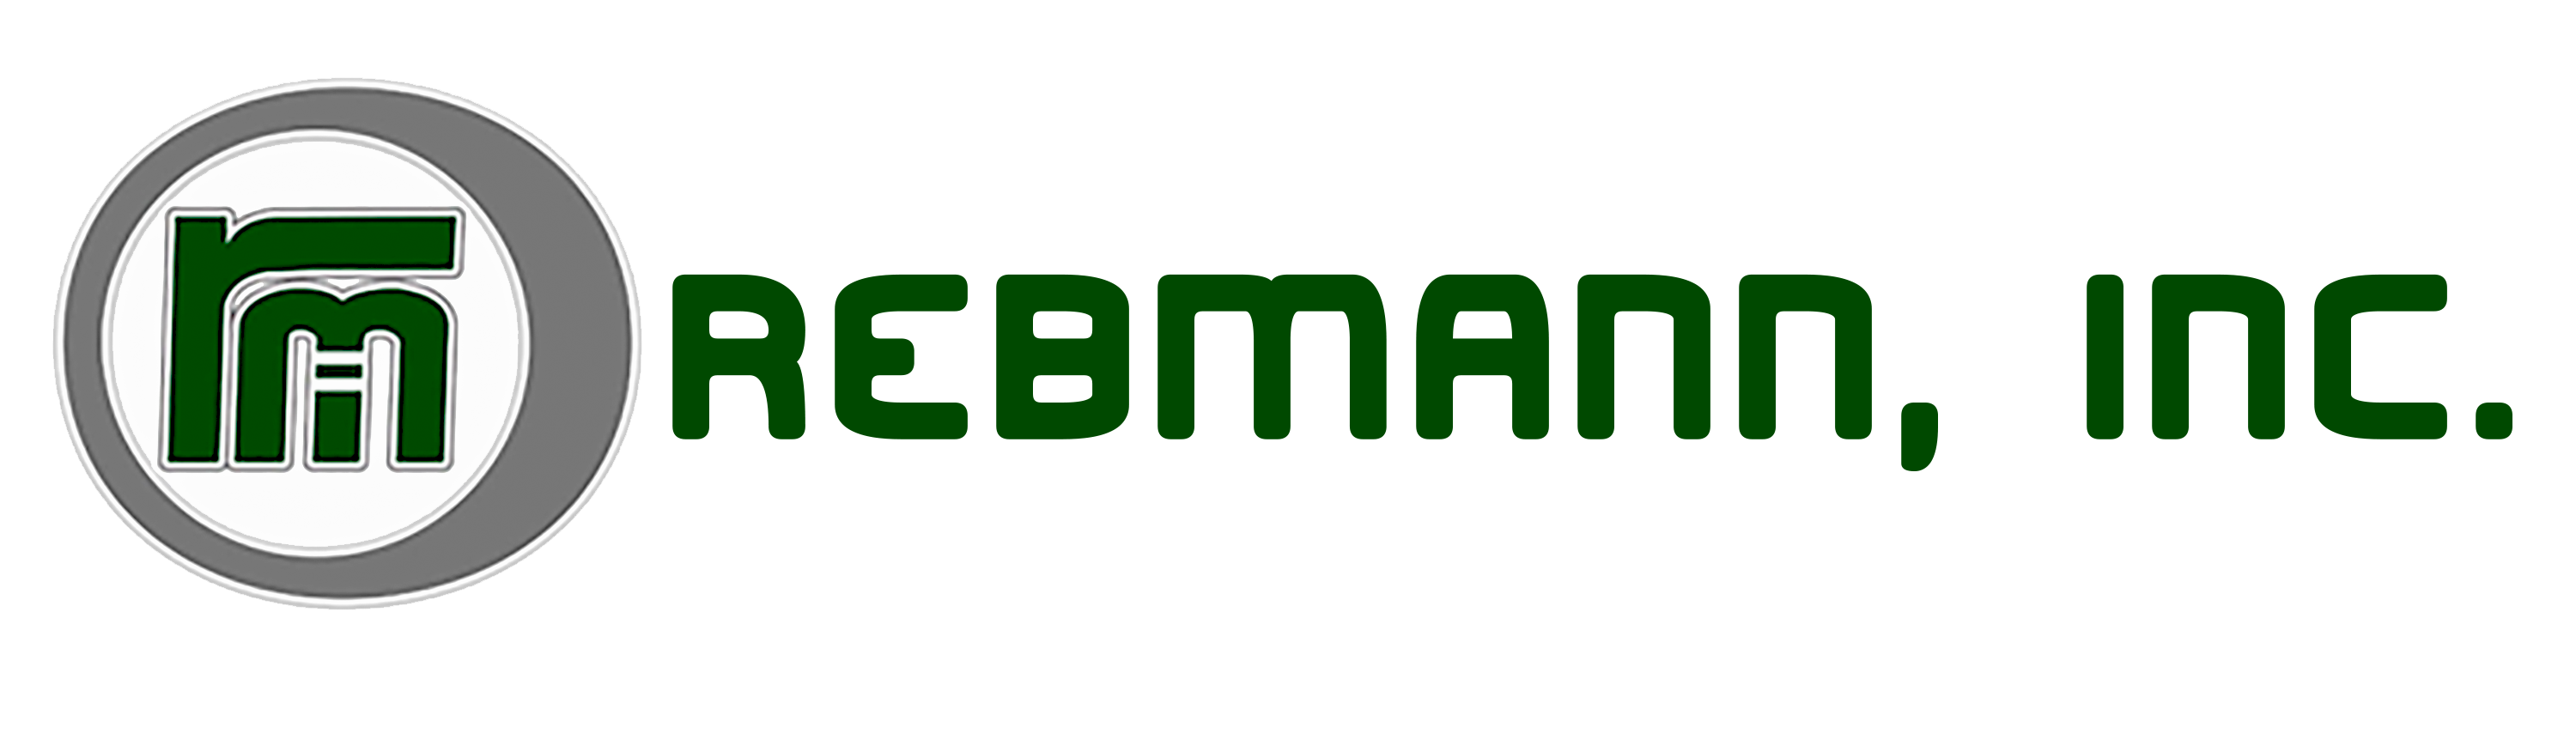 Rebmann, Inc.